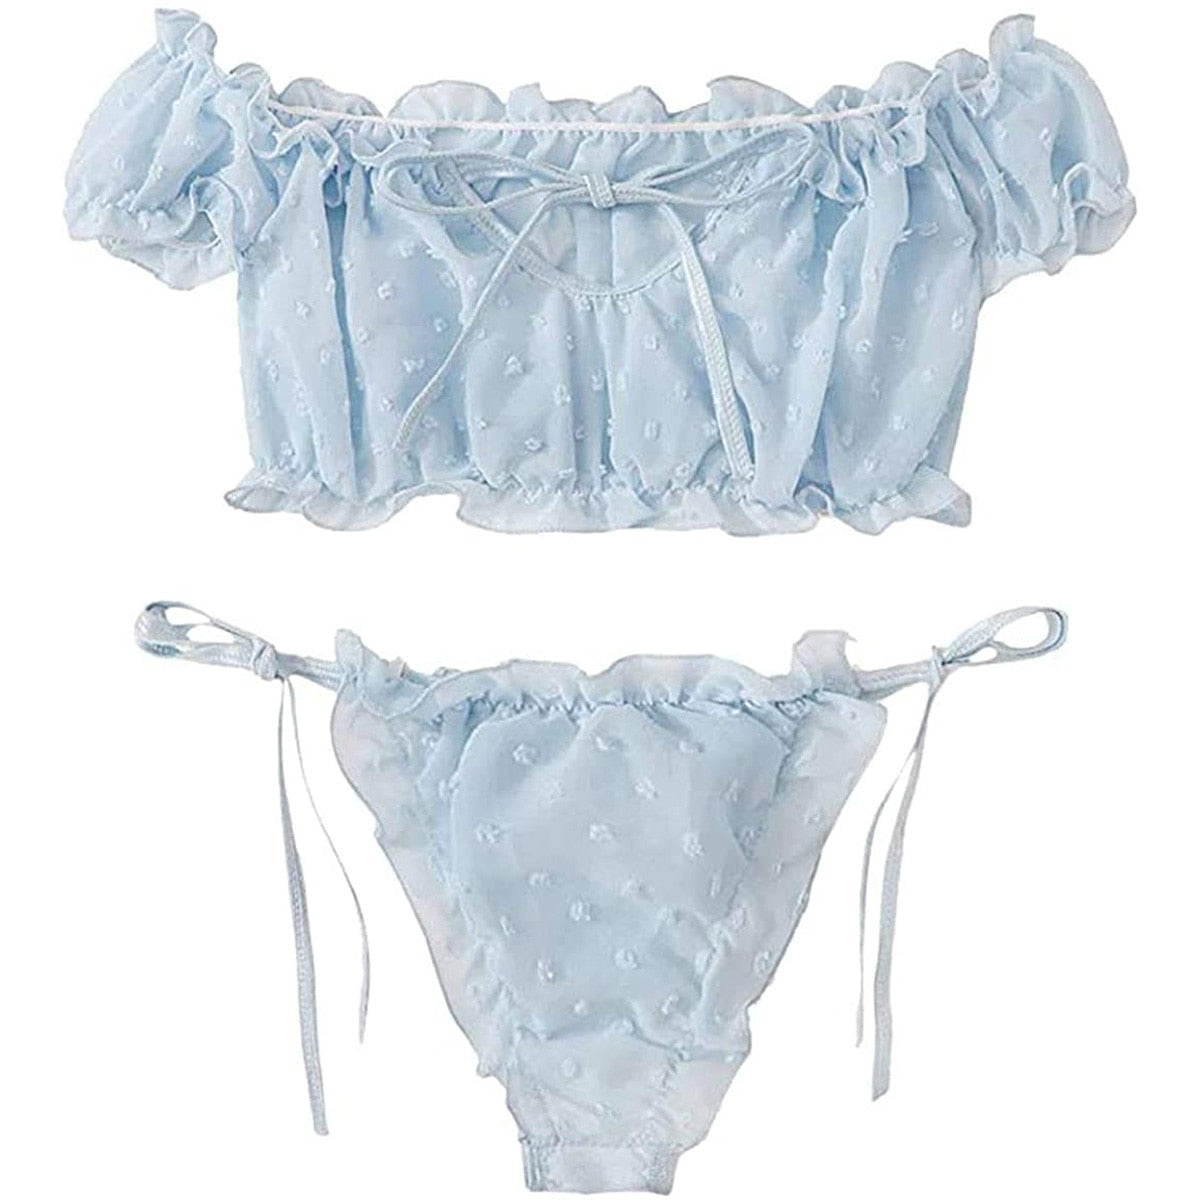 mesh polka dot lingerie panty and bra set